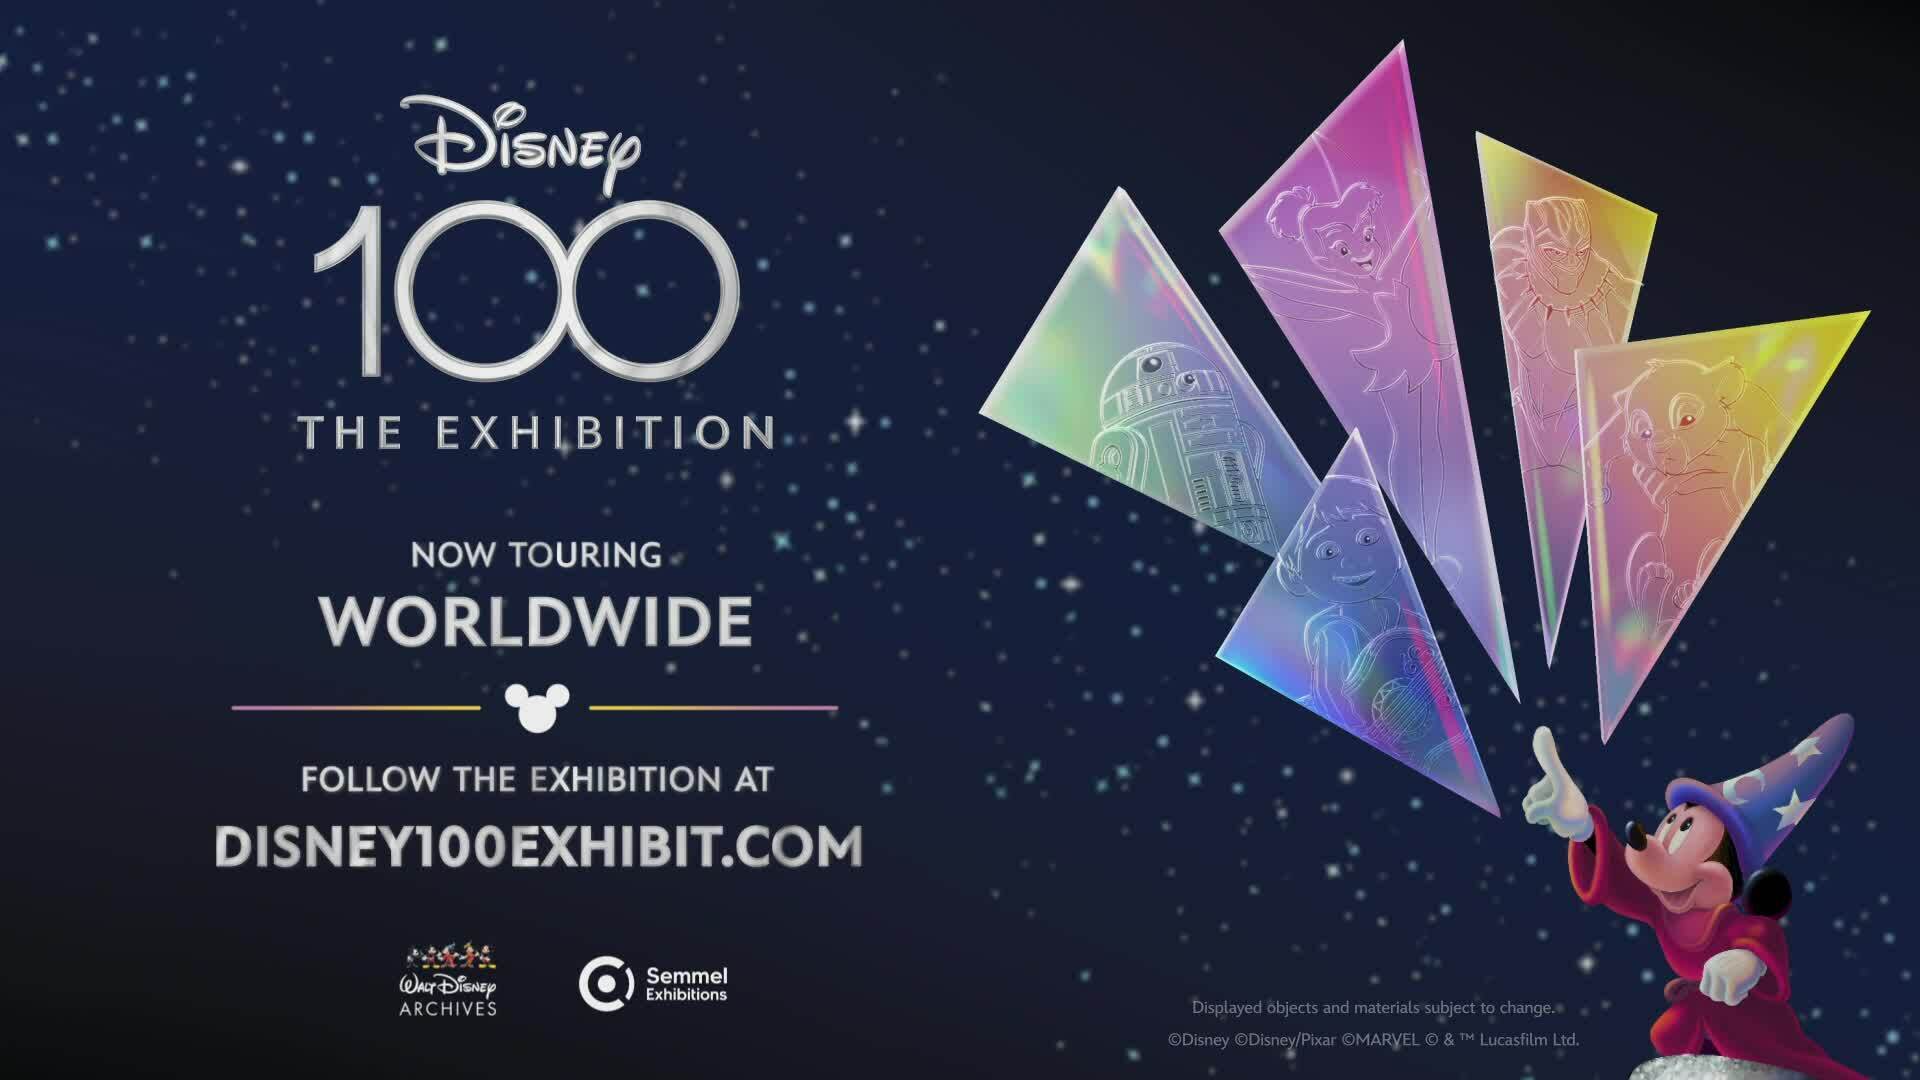 Disney100: The Exhibition